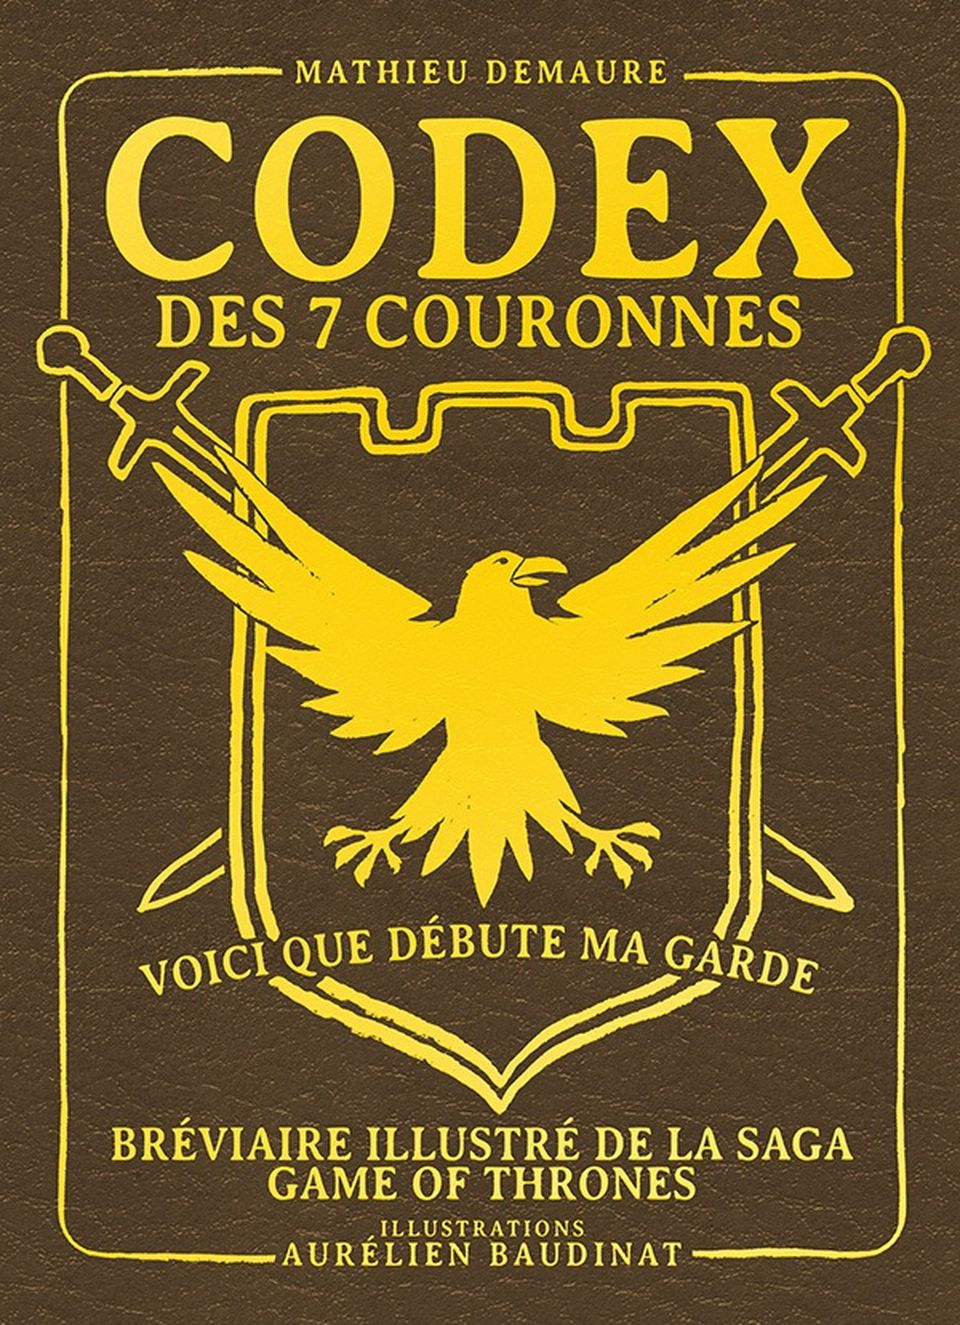 Codex des 7 couronnes, bréviaire illustré de la saga Game of Thrones image